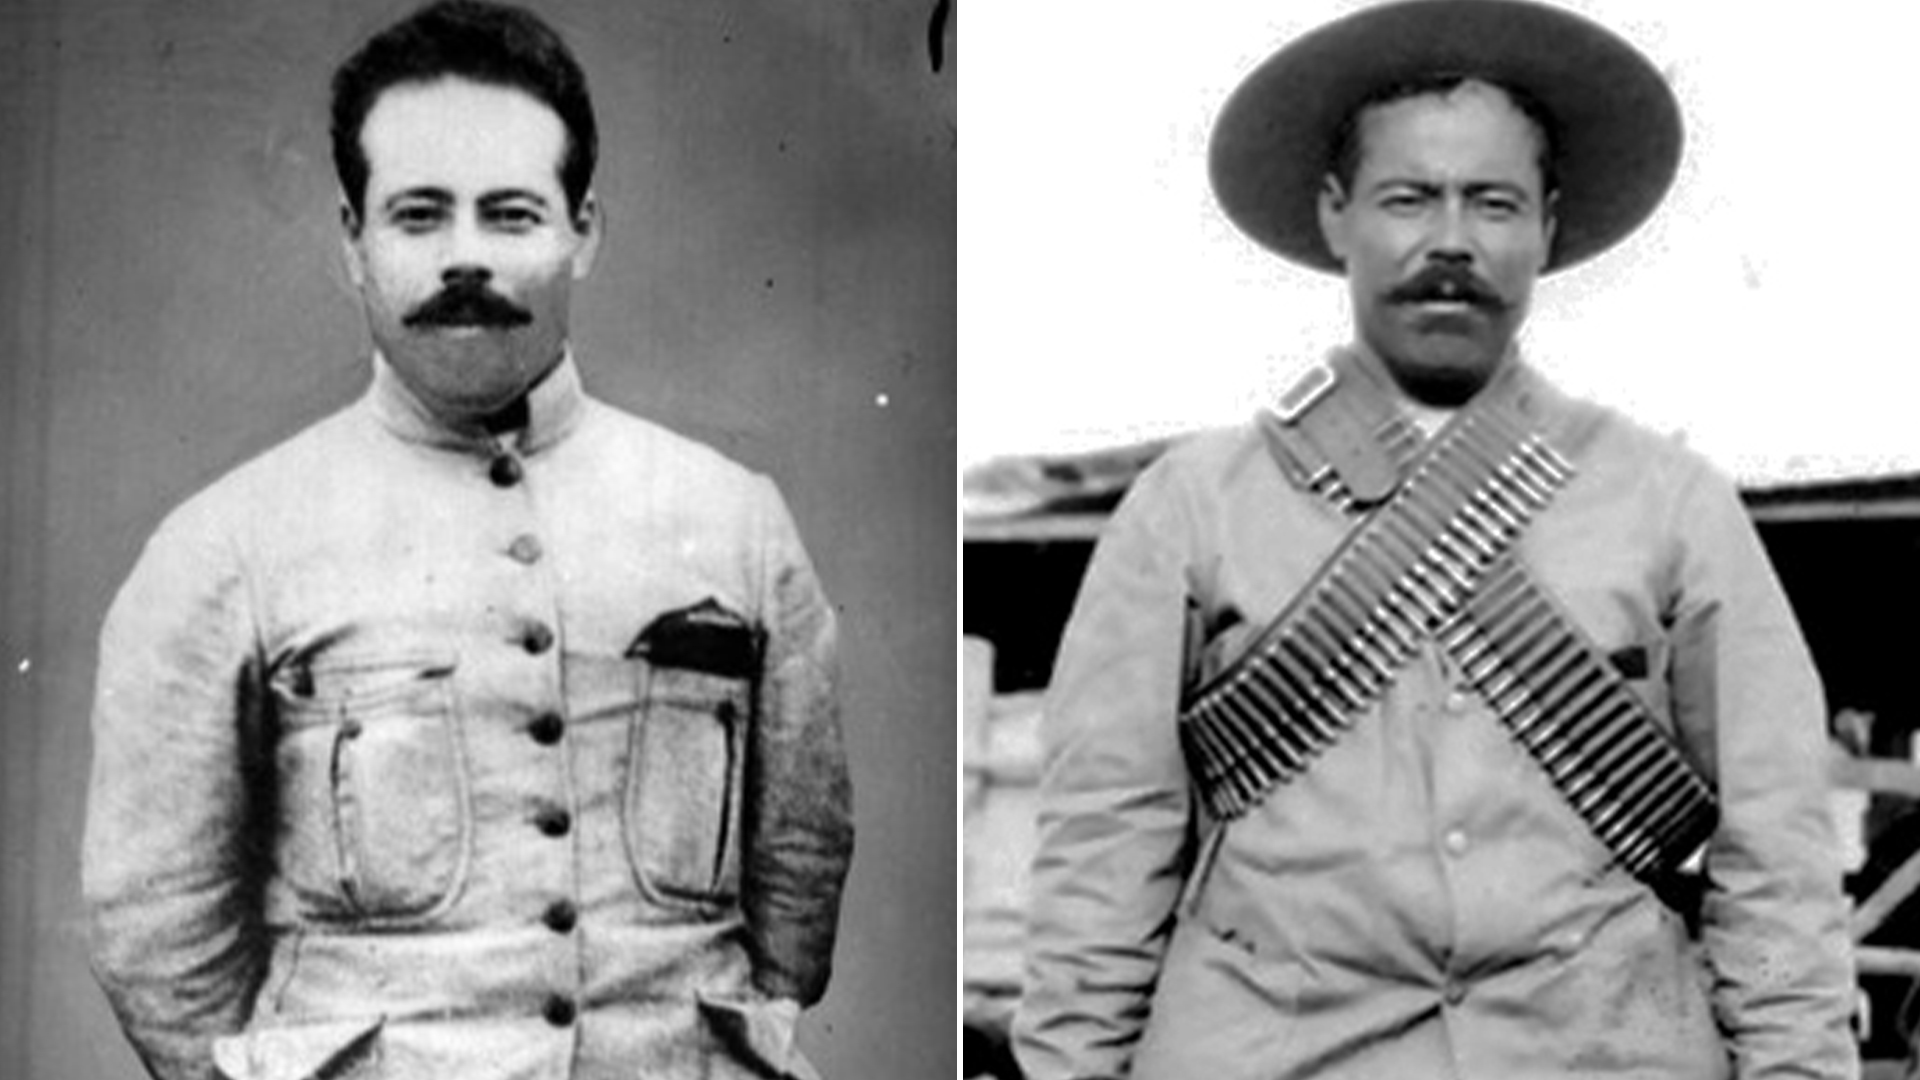 Pancho Villa, “un analfabeto convertido en revolucionario”, según historiador